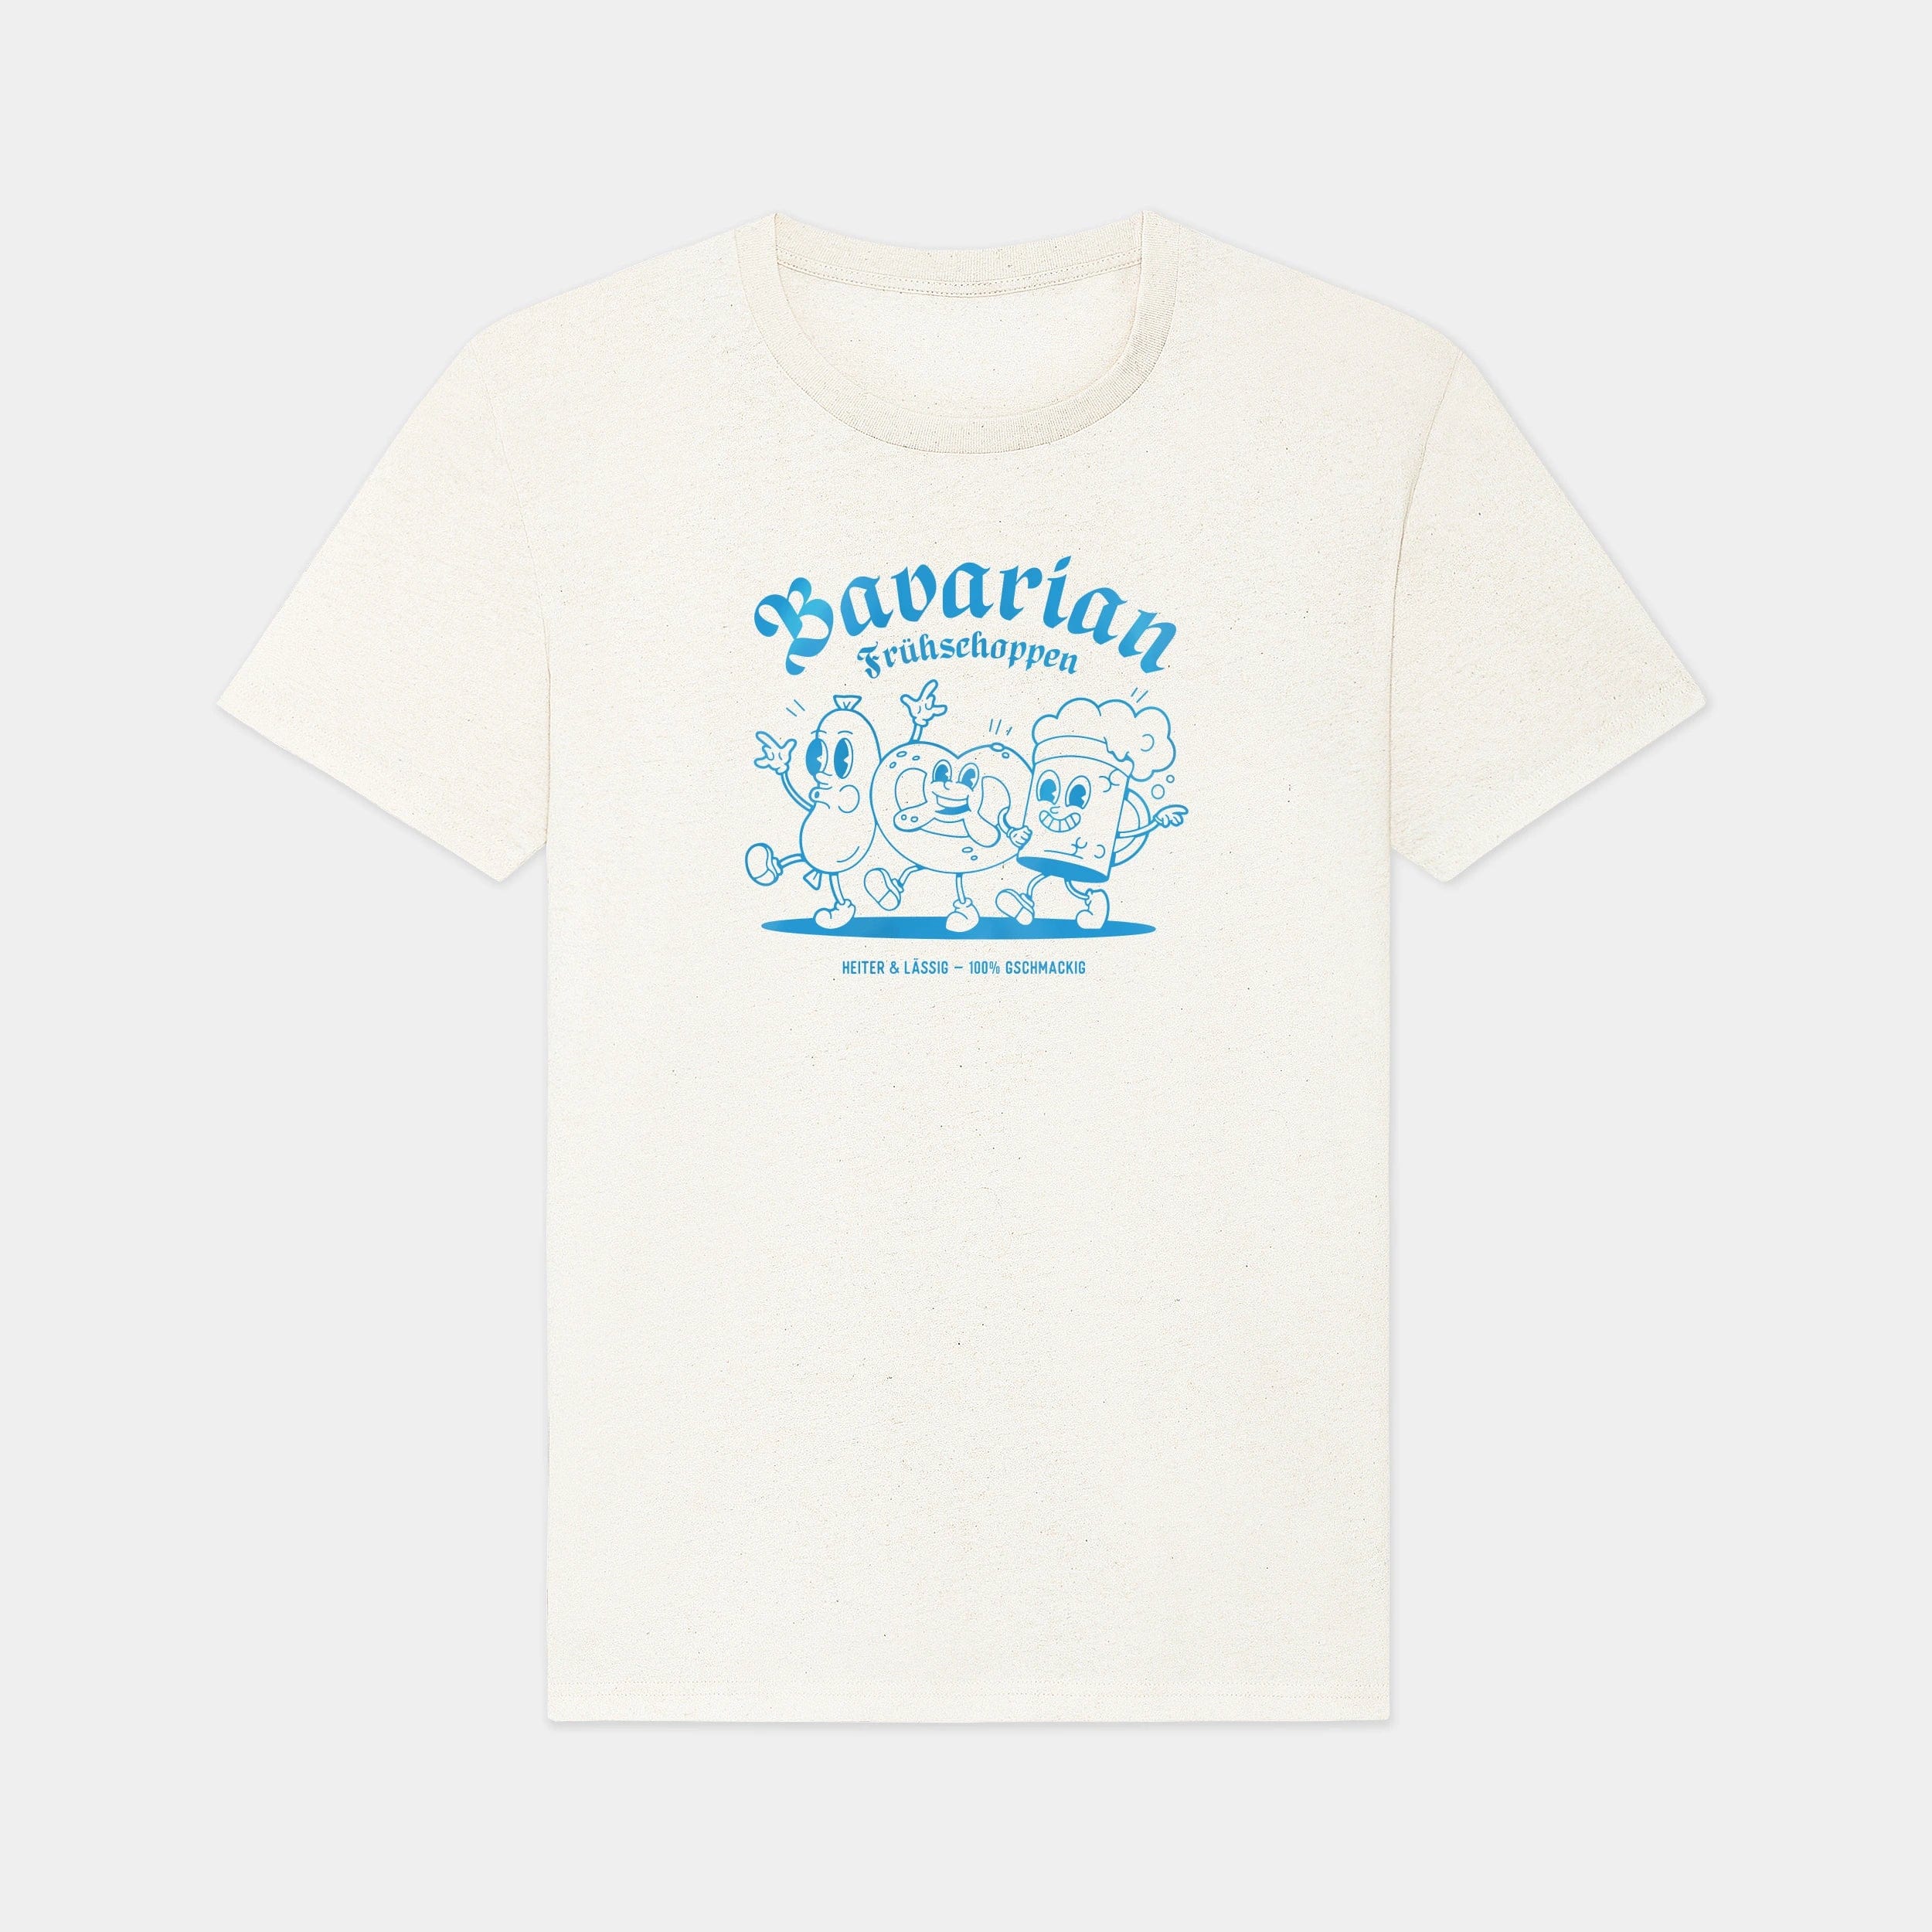 HEITER & LÄSSIG T-Shirt "Frühshoppen" - aus nachhaltiger und fairer Produktion